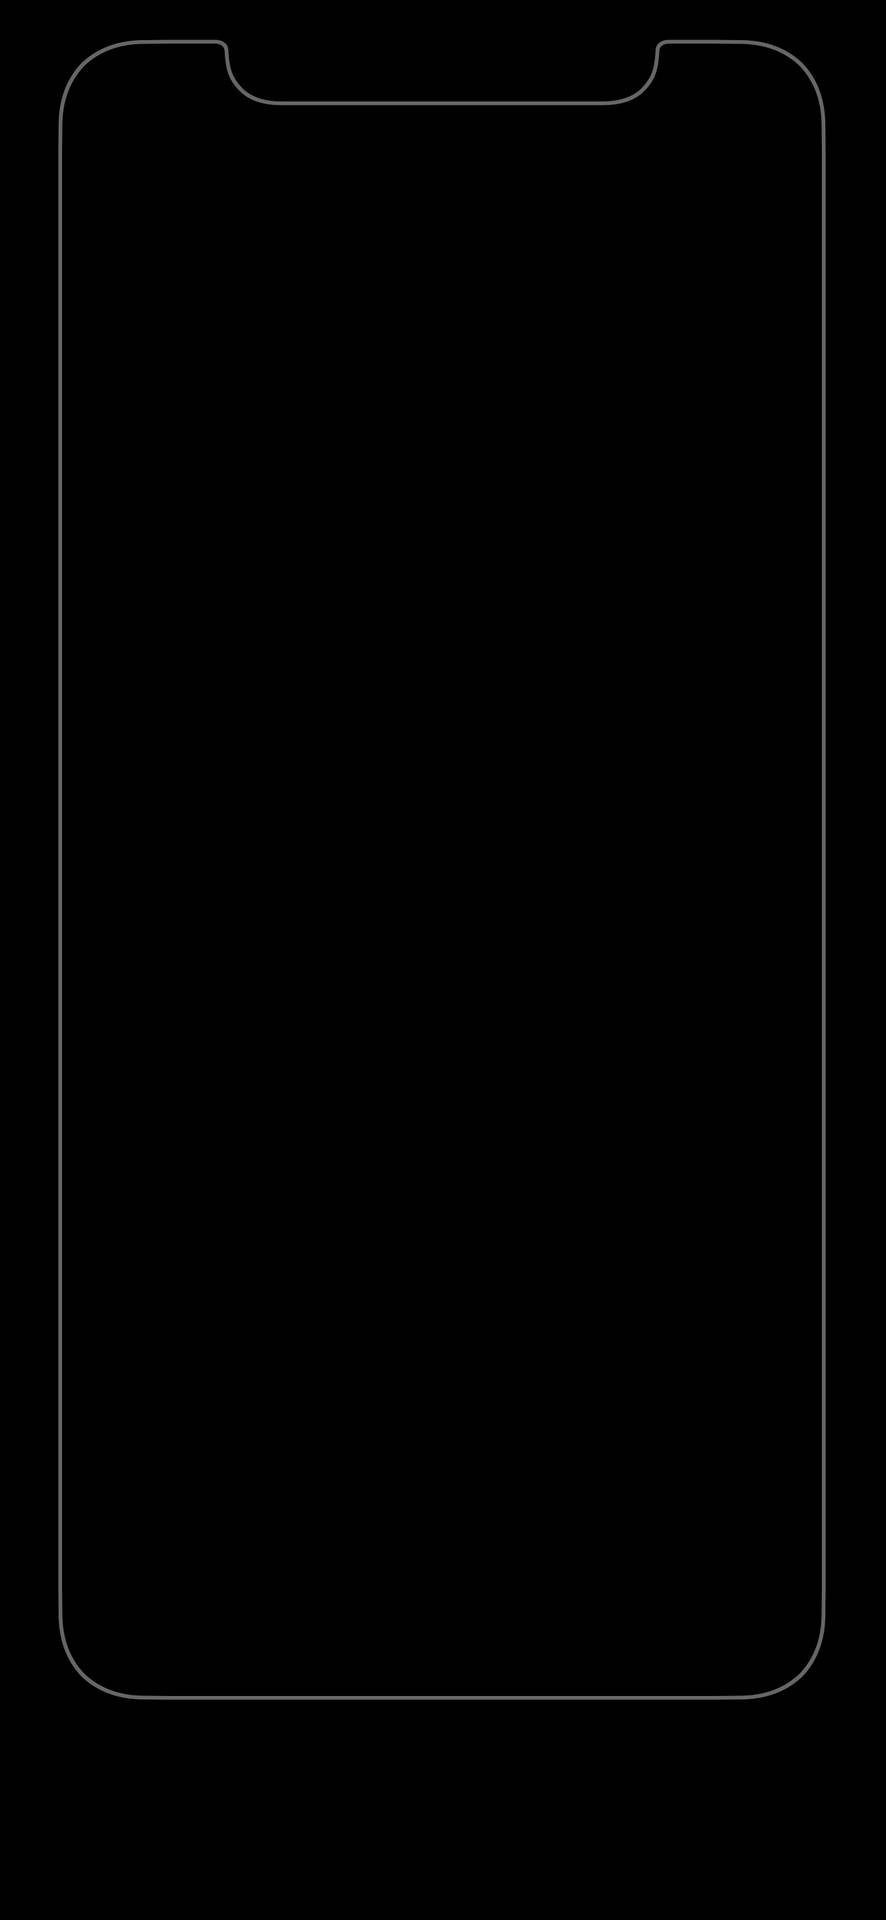 White Bezel Pure Black Hd Phone Screen Background